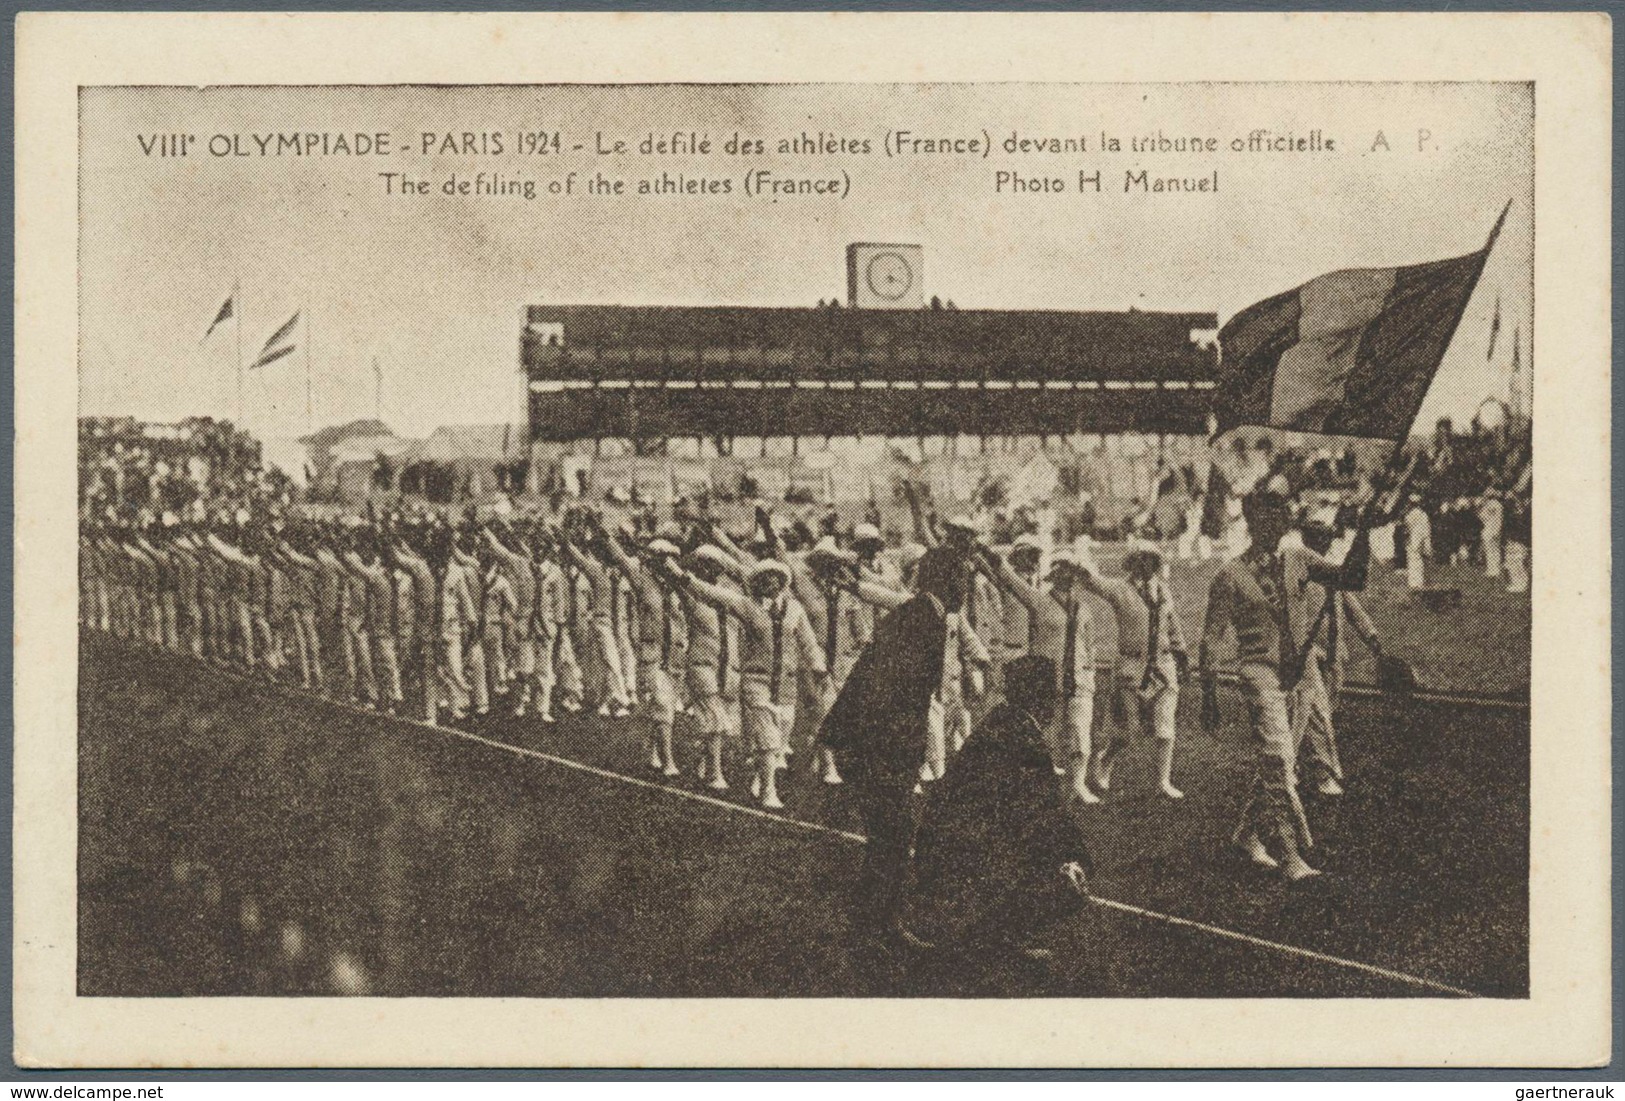 10445 Thematik: Olympische Spiele / olympic games: 1924, Paris, acht verschiedene Fotokarten, meist Ansich